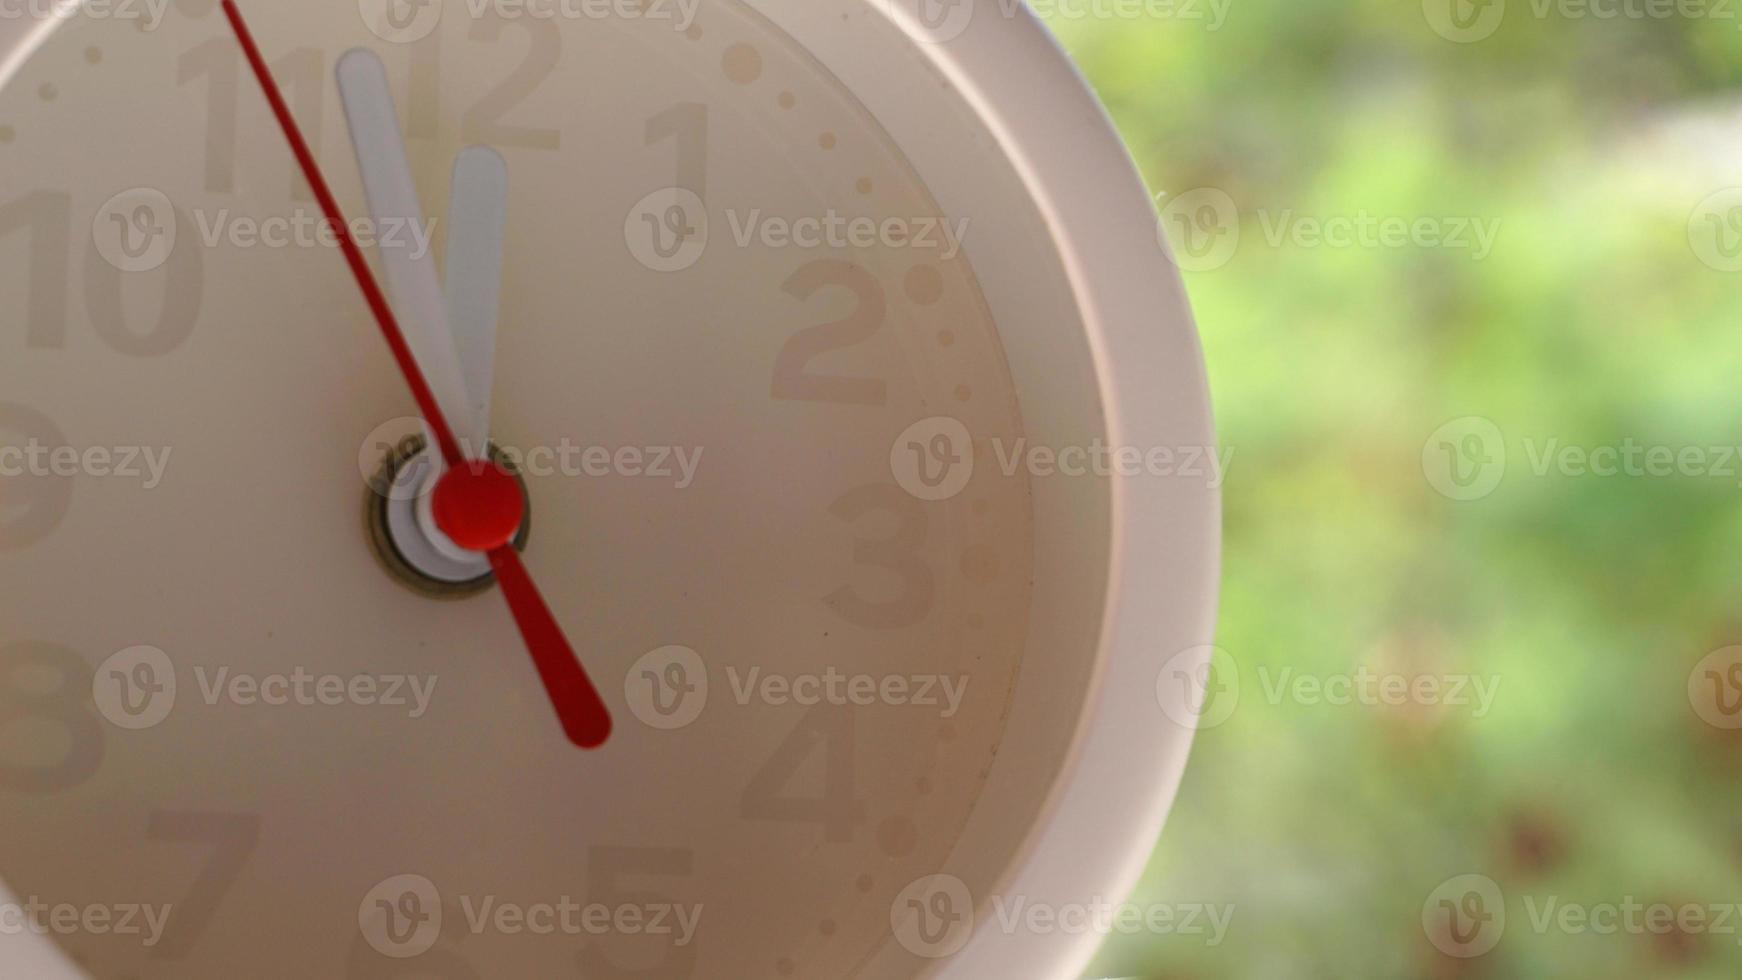 un disparo de cerca de un reloj blanco con flechas que muestran el tiempo. foto